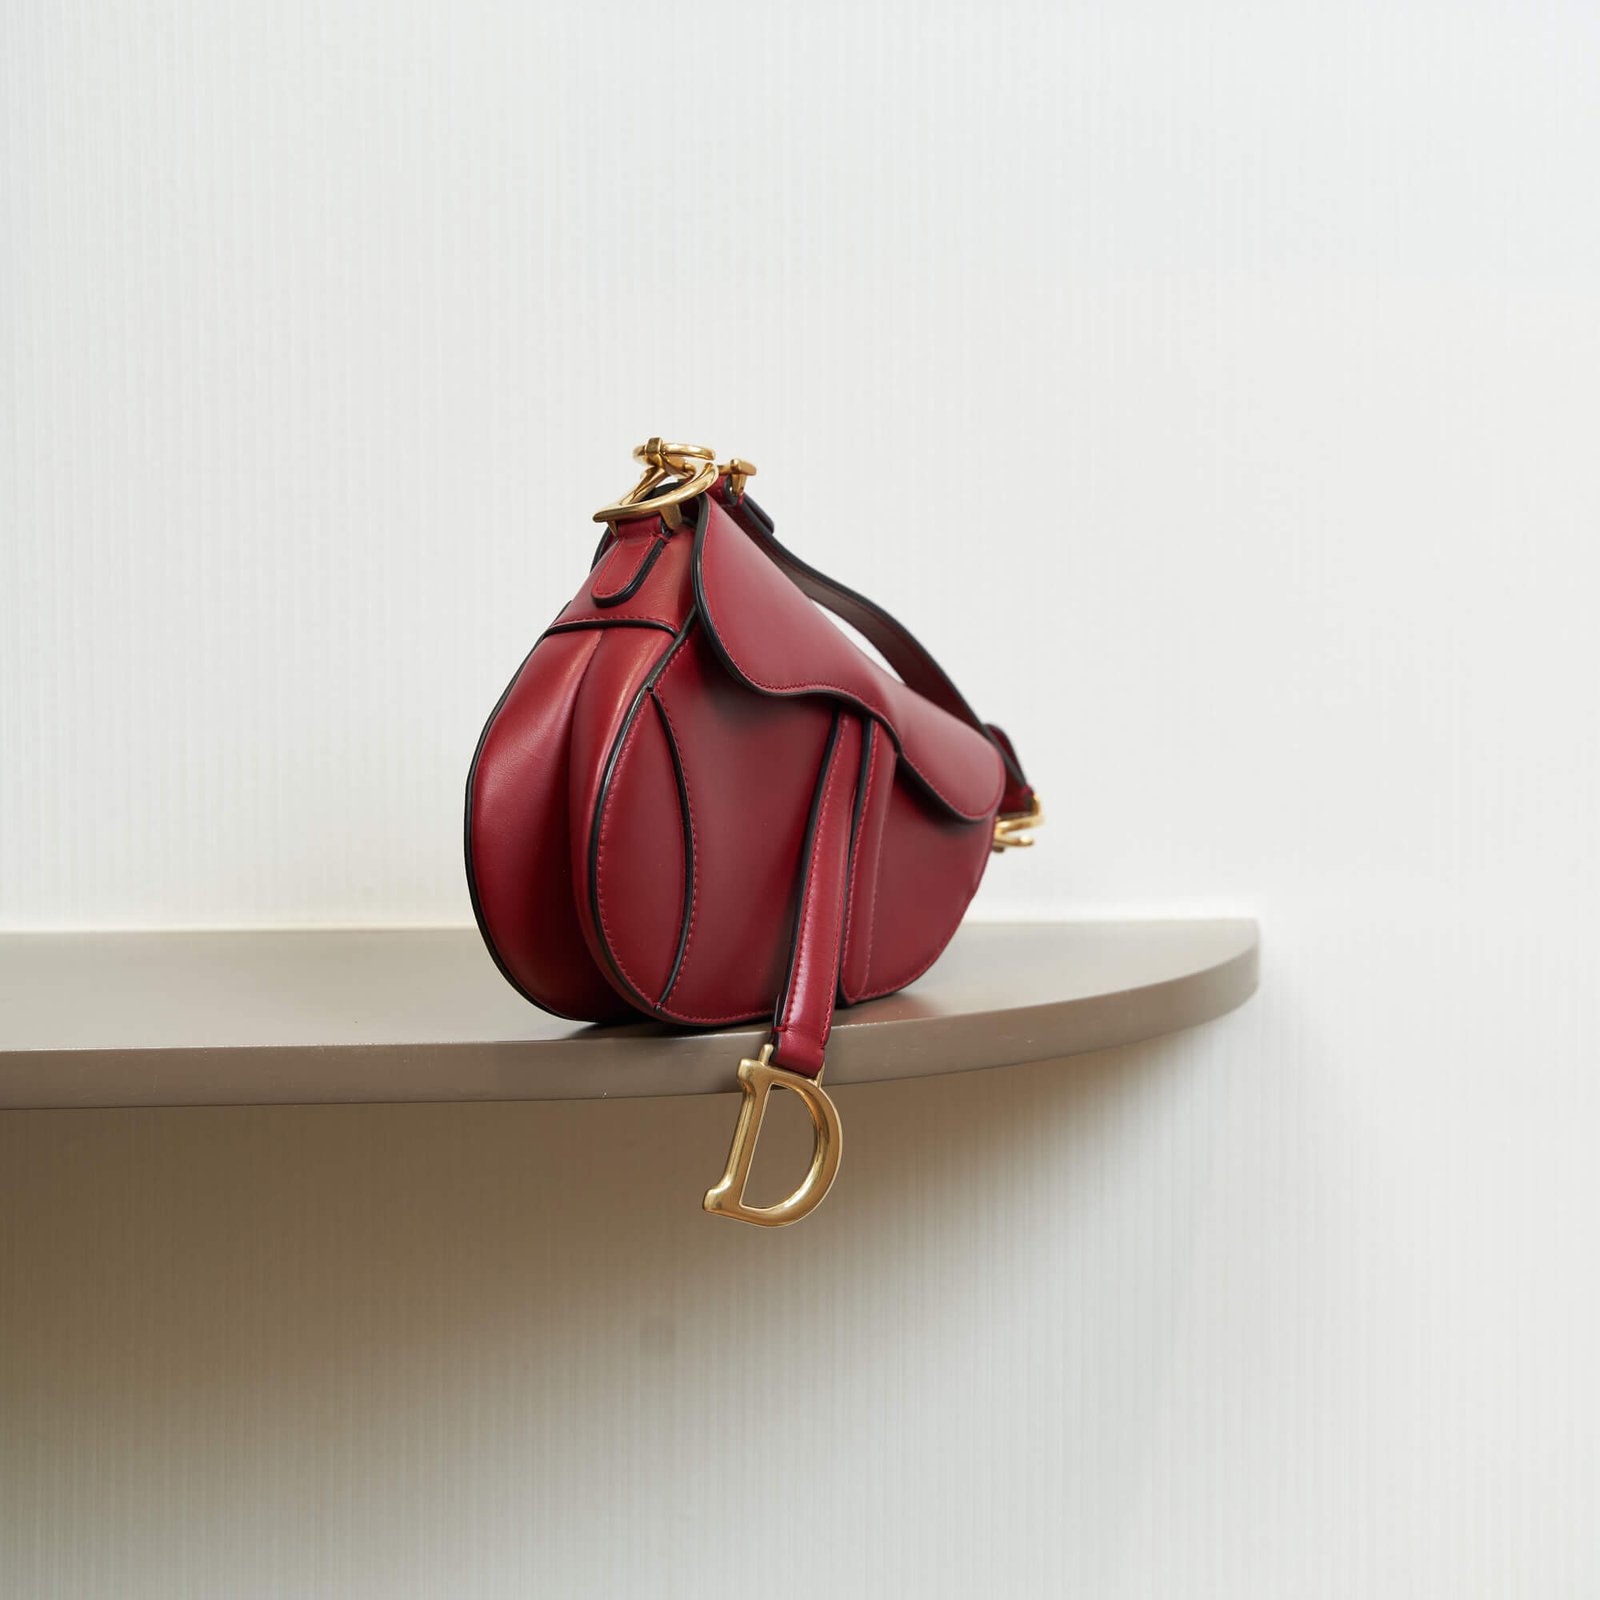 Dior Saddle Burgundy Red Saddle bag with Oblique Studded Strap